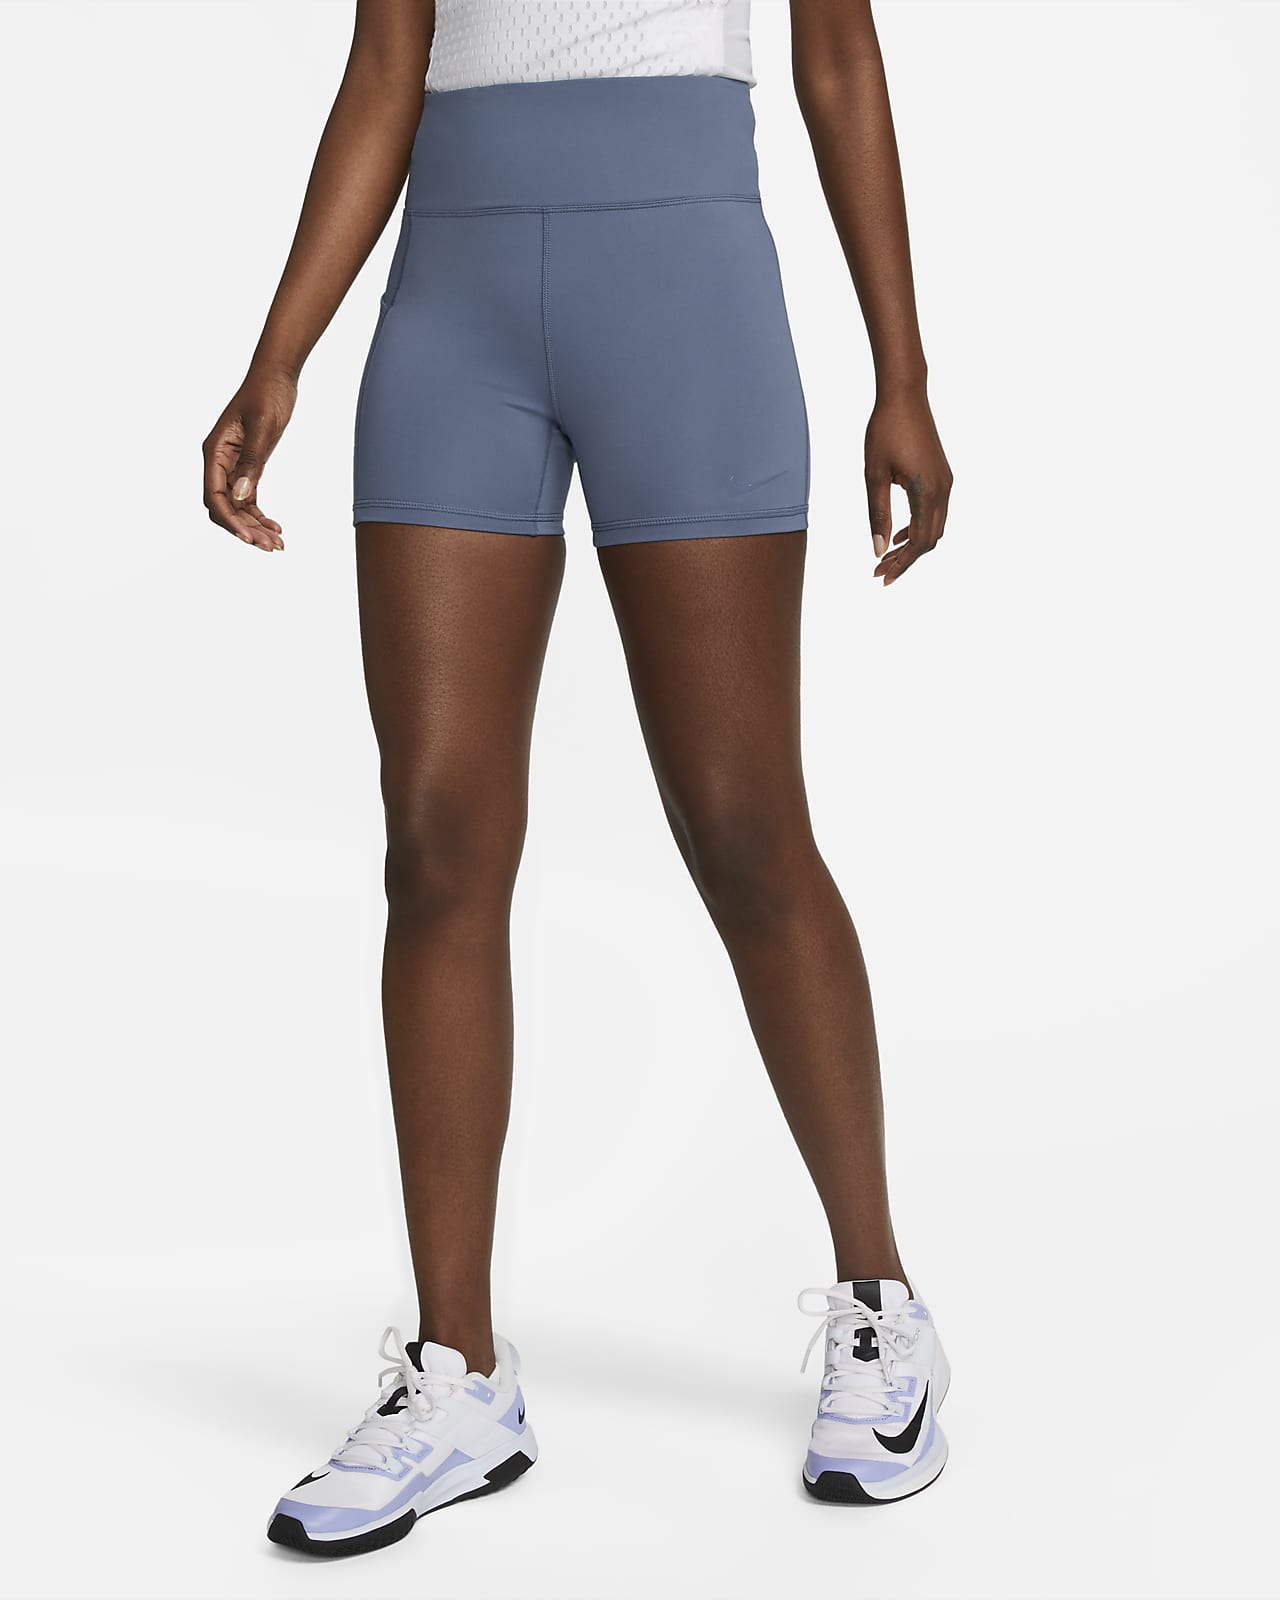 transfusion klodset brugerdefinerede Nike Dri-FIT Advantage-tennisshorts med høj talje (10 cm) til kvinder. Nike  DK